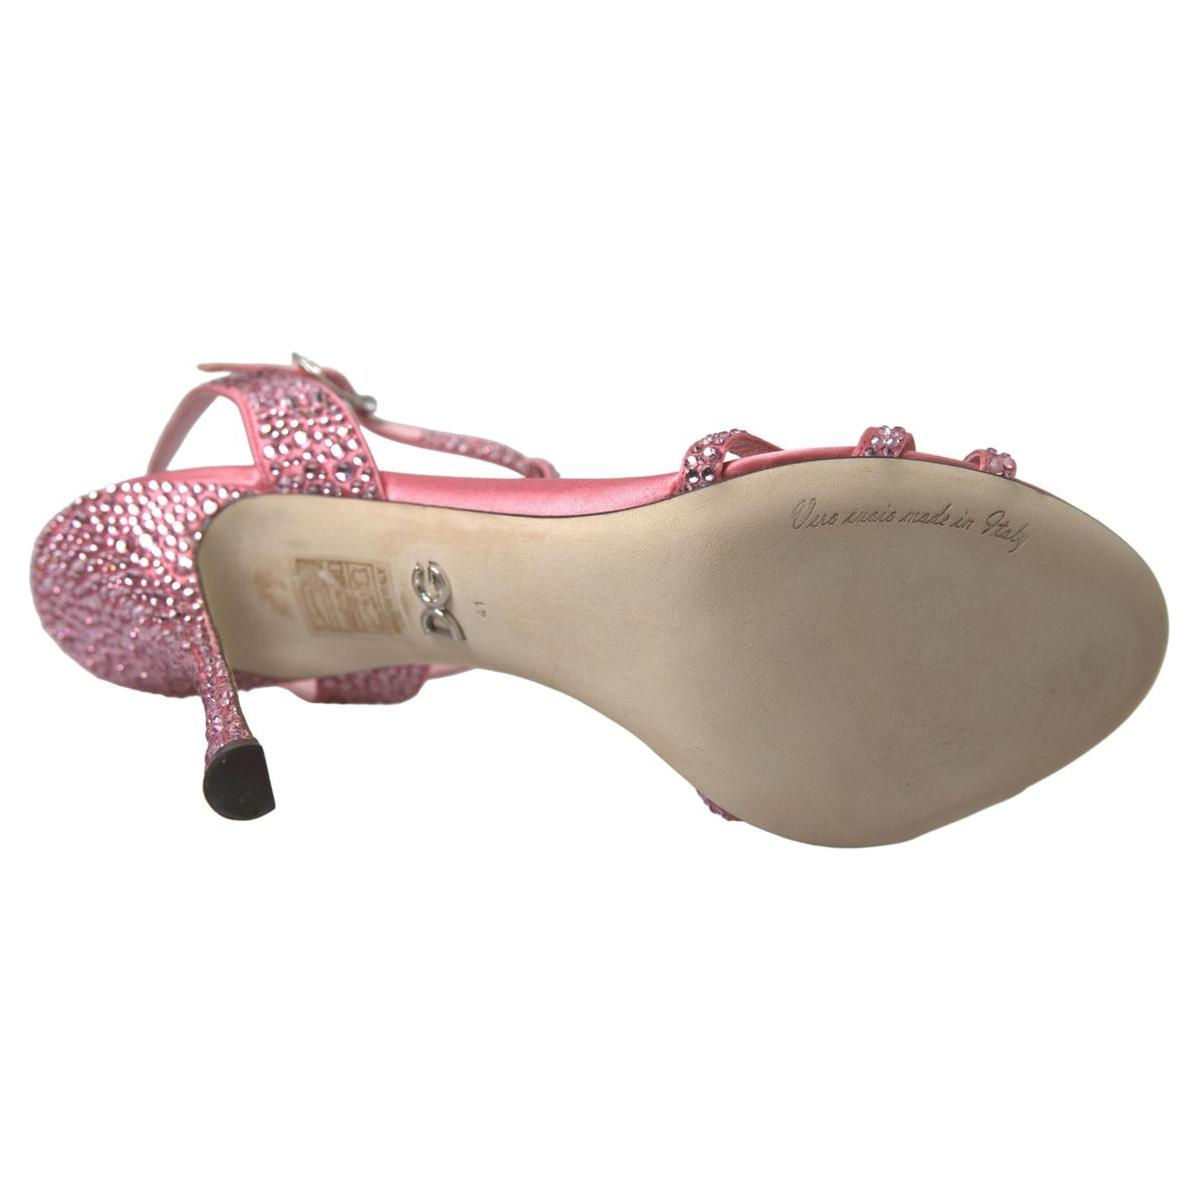 Dolce & Gabbana Elegant Pink Ankle Strap Sandals pink-crystal-ankle-strap-shoes-sandals